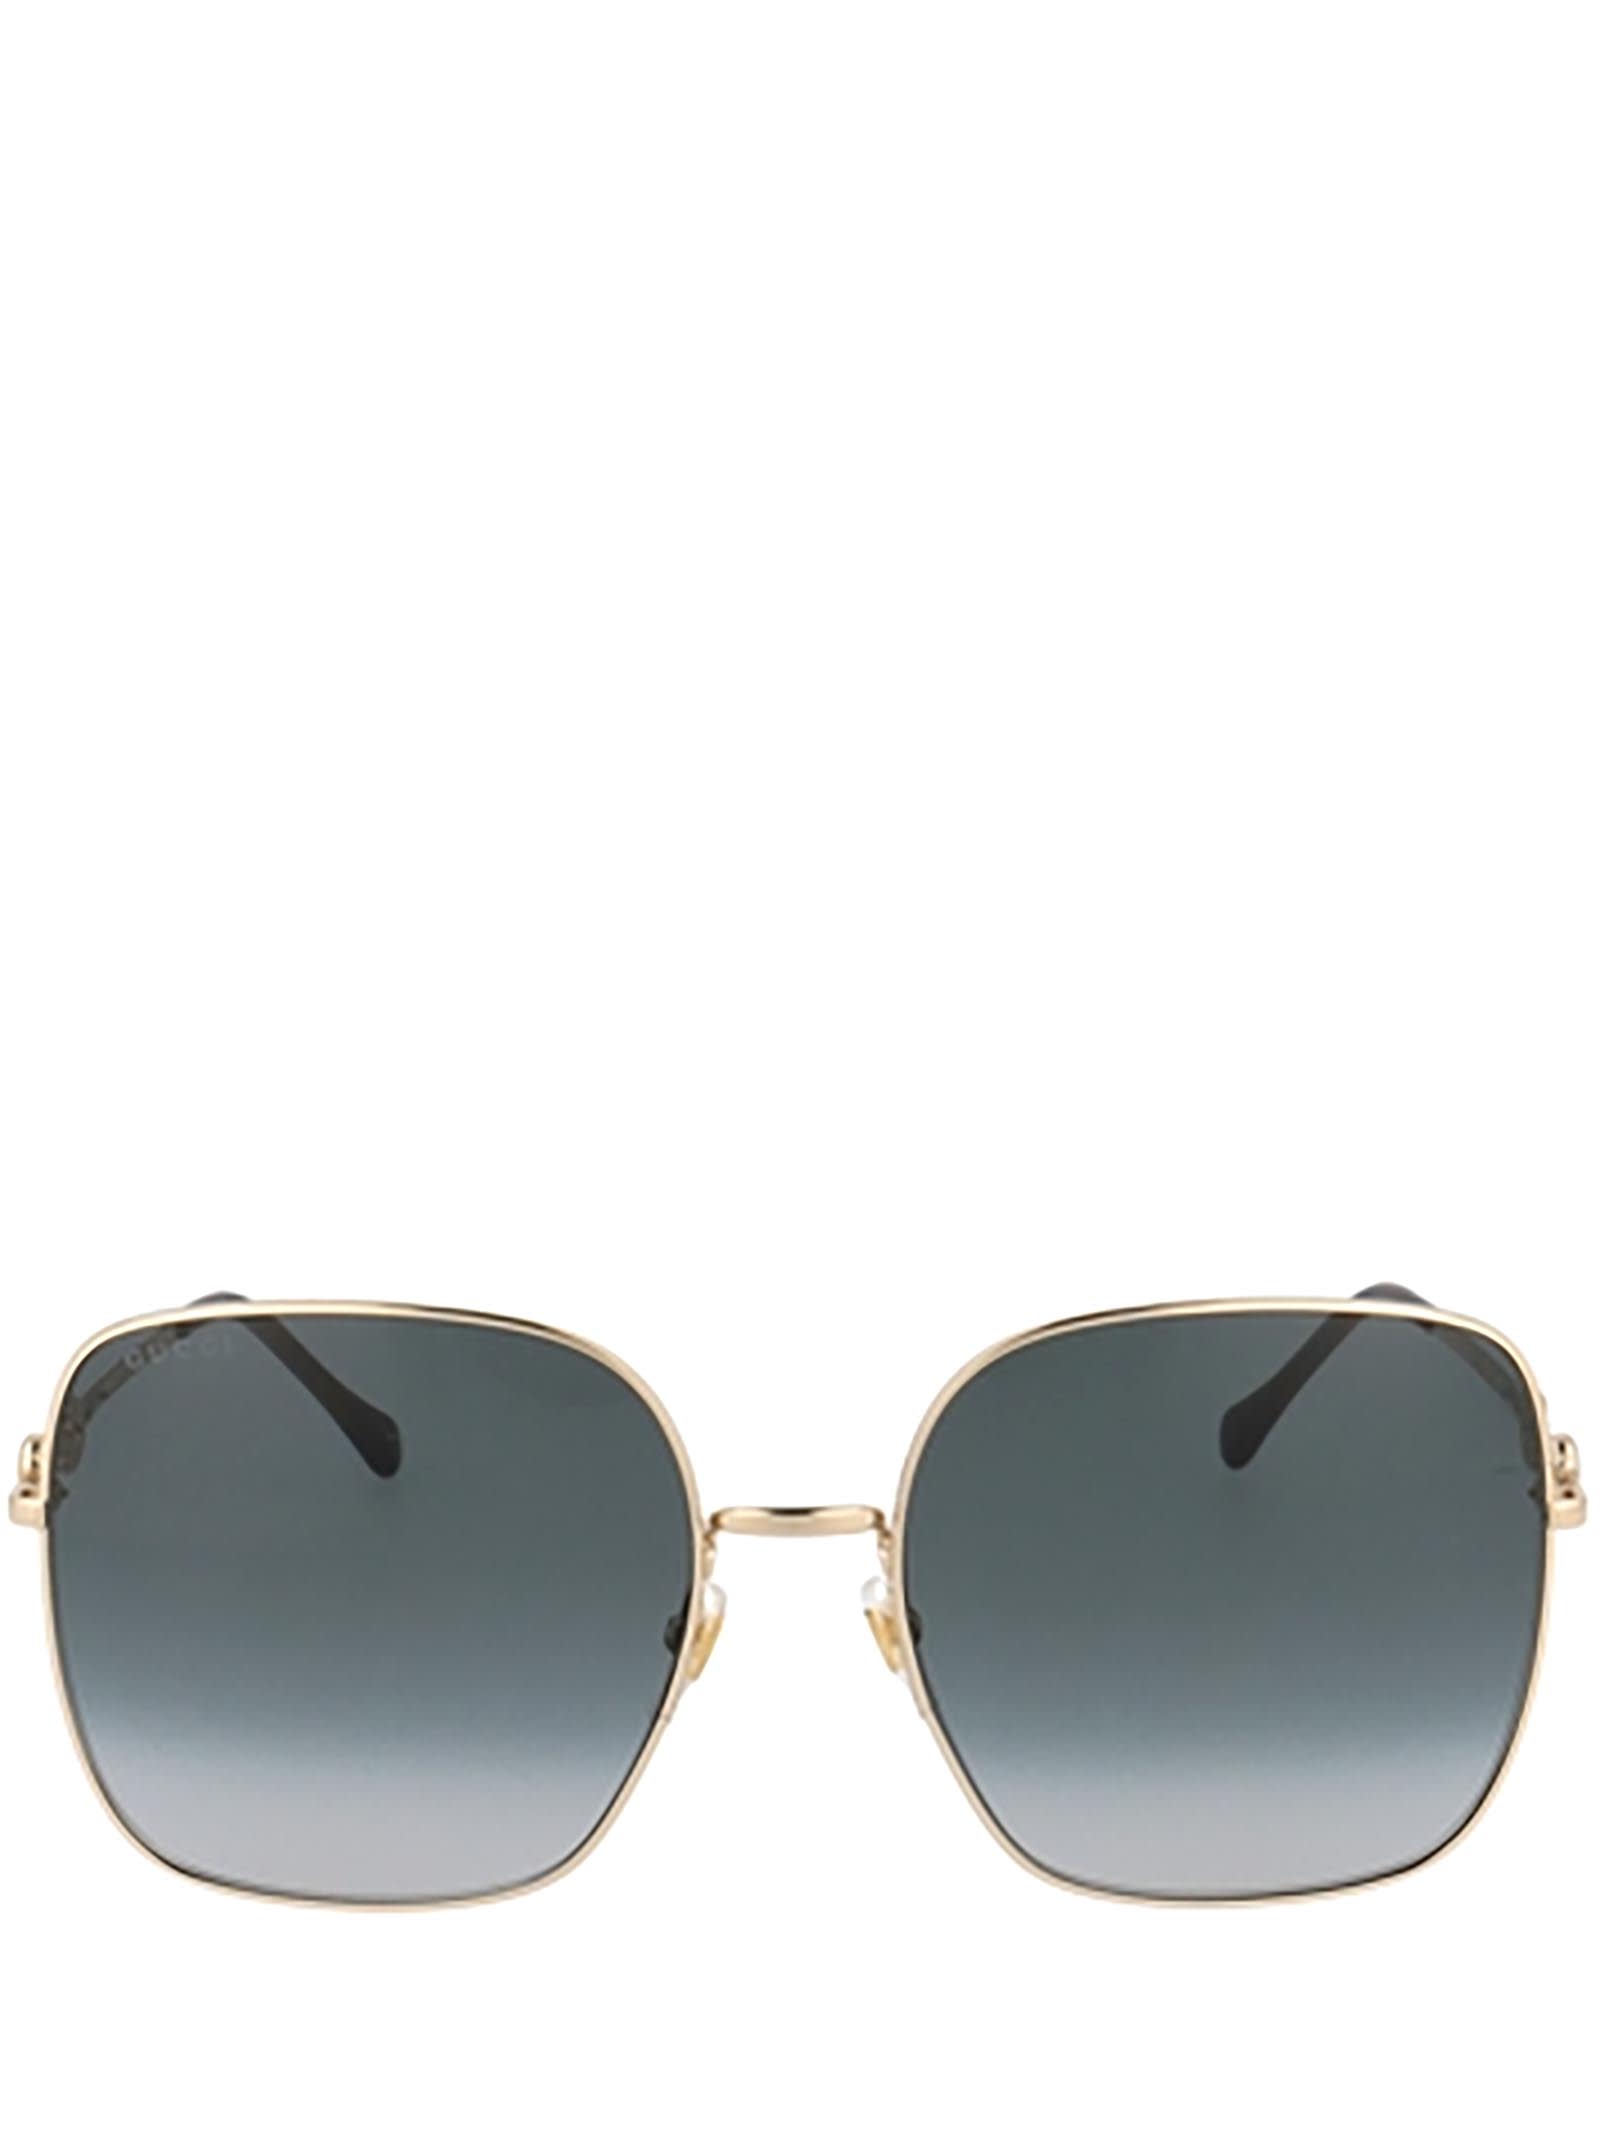 Gucci Gg0879s Gold Sunglasses